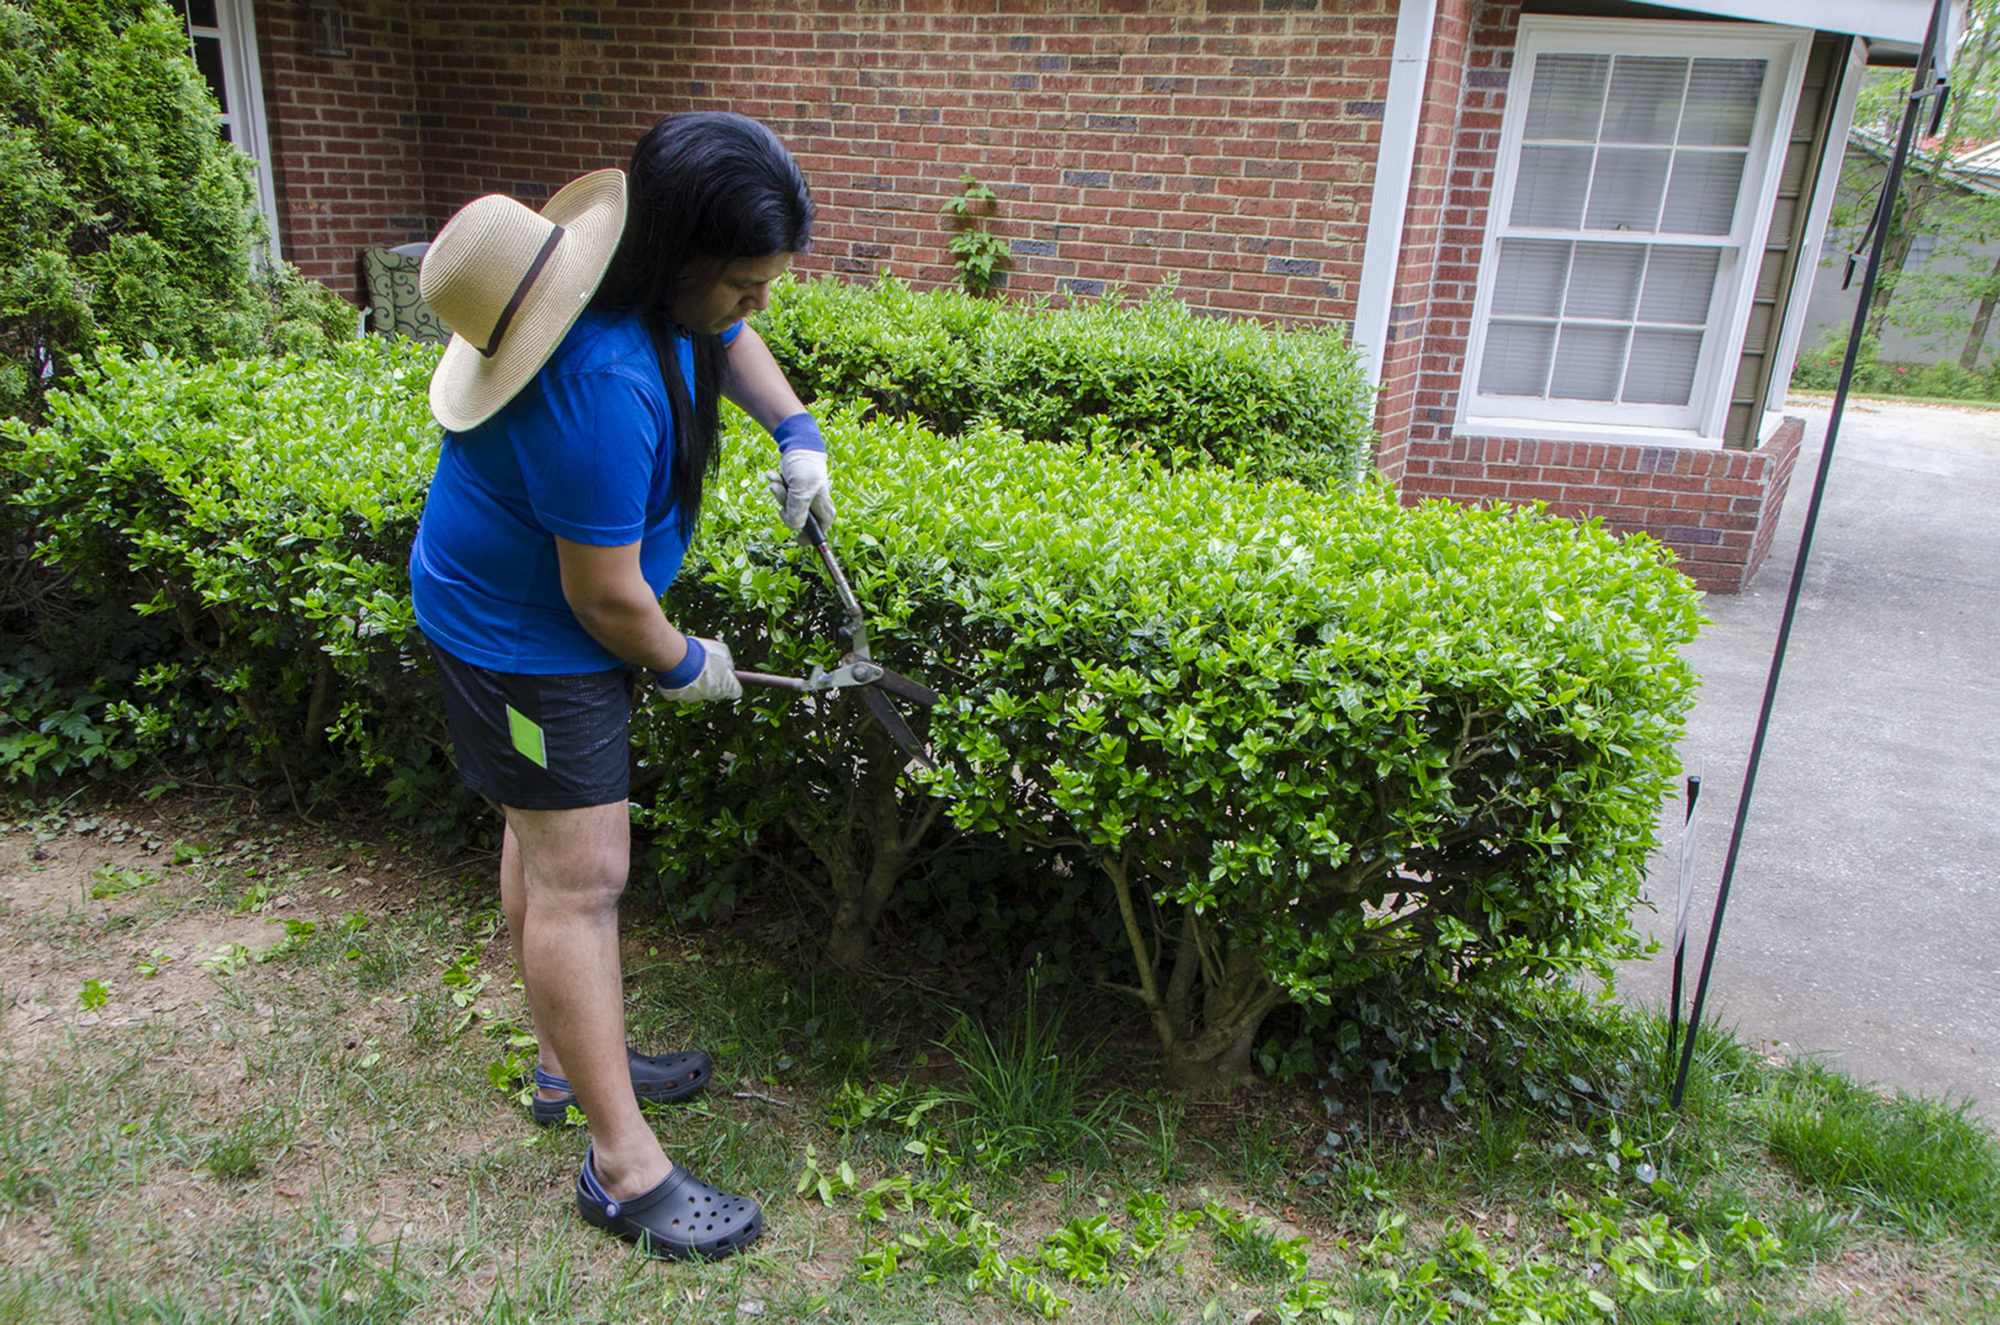 a person trims bushes